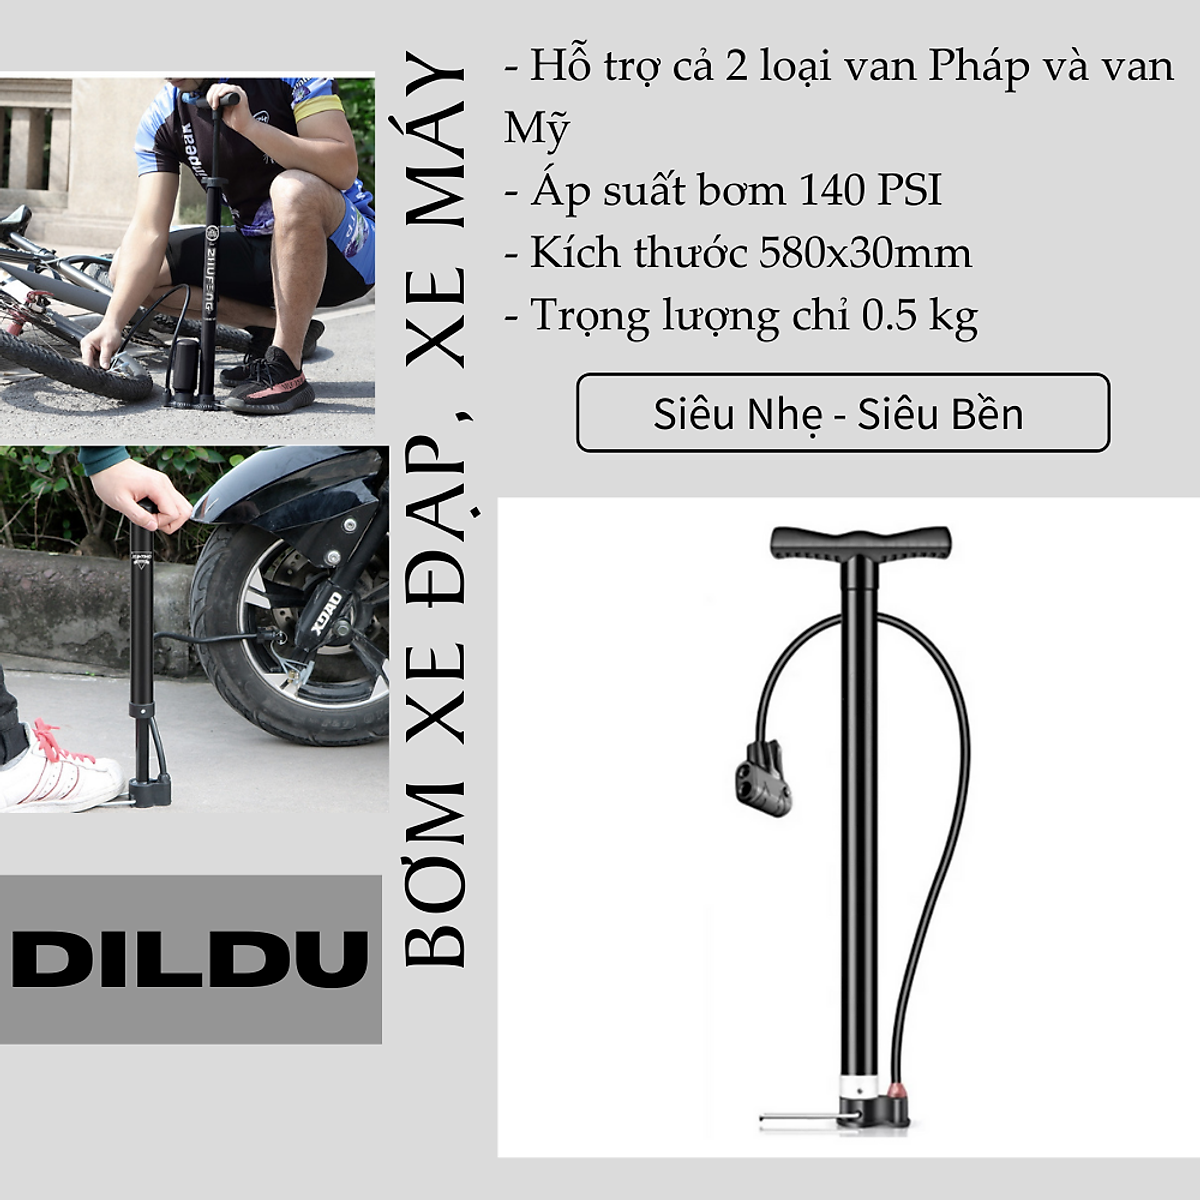 Bơm xe đạp bơm xe máy XT02 - ống bơm đa năng gia dụng dài đến 58cm áp suất 150PSI - Hỗ trợ van Mỹ và van Pháp